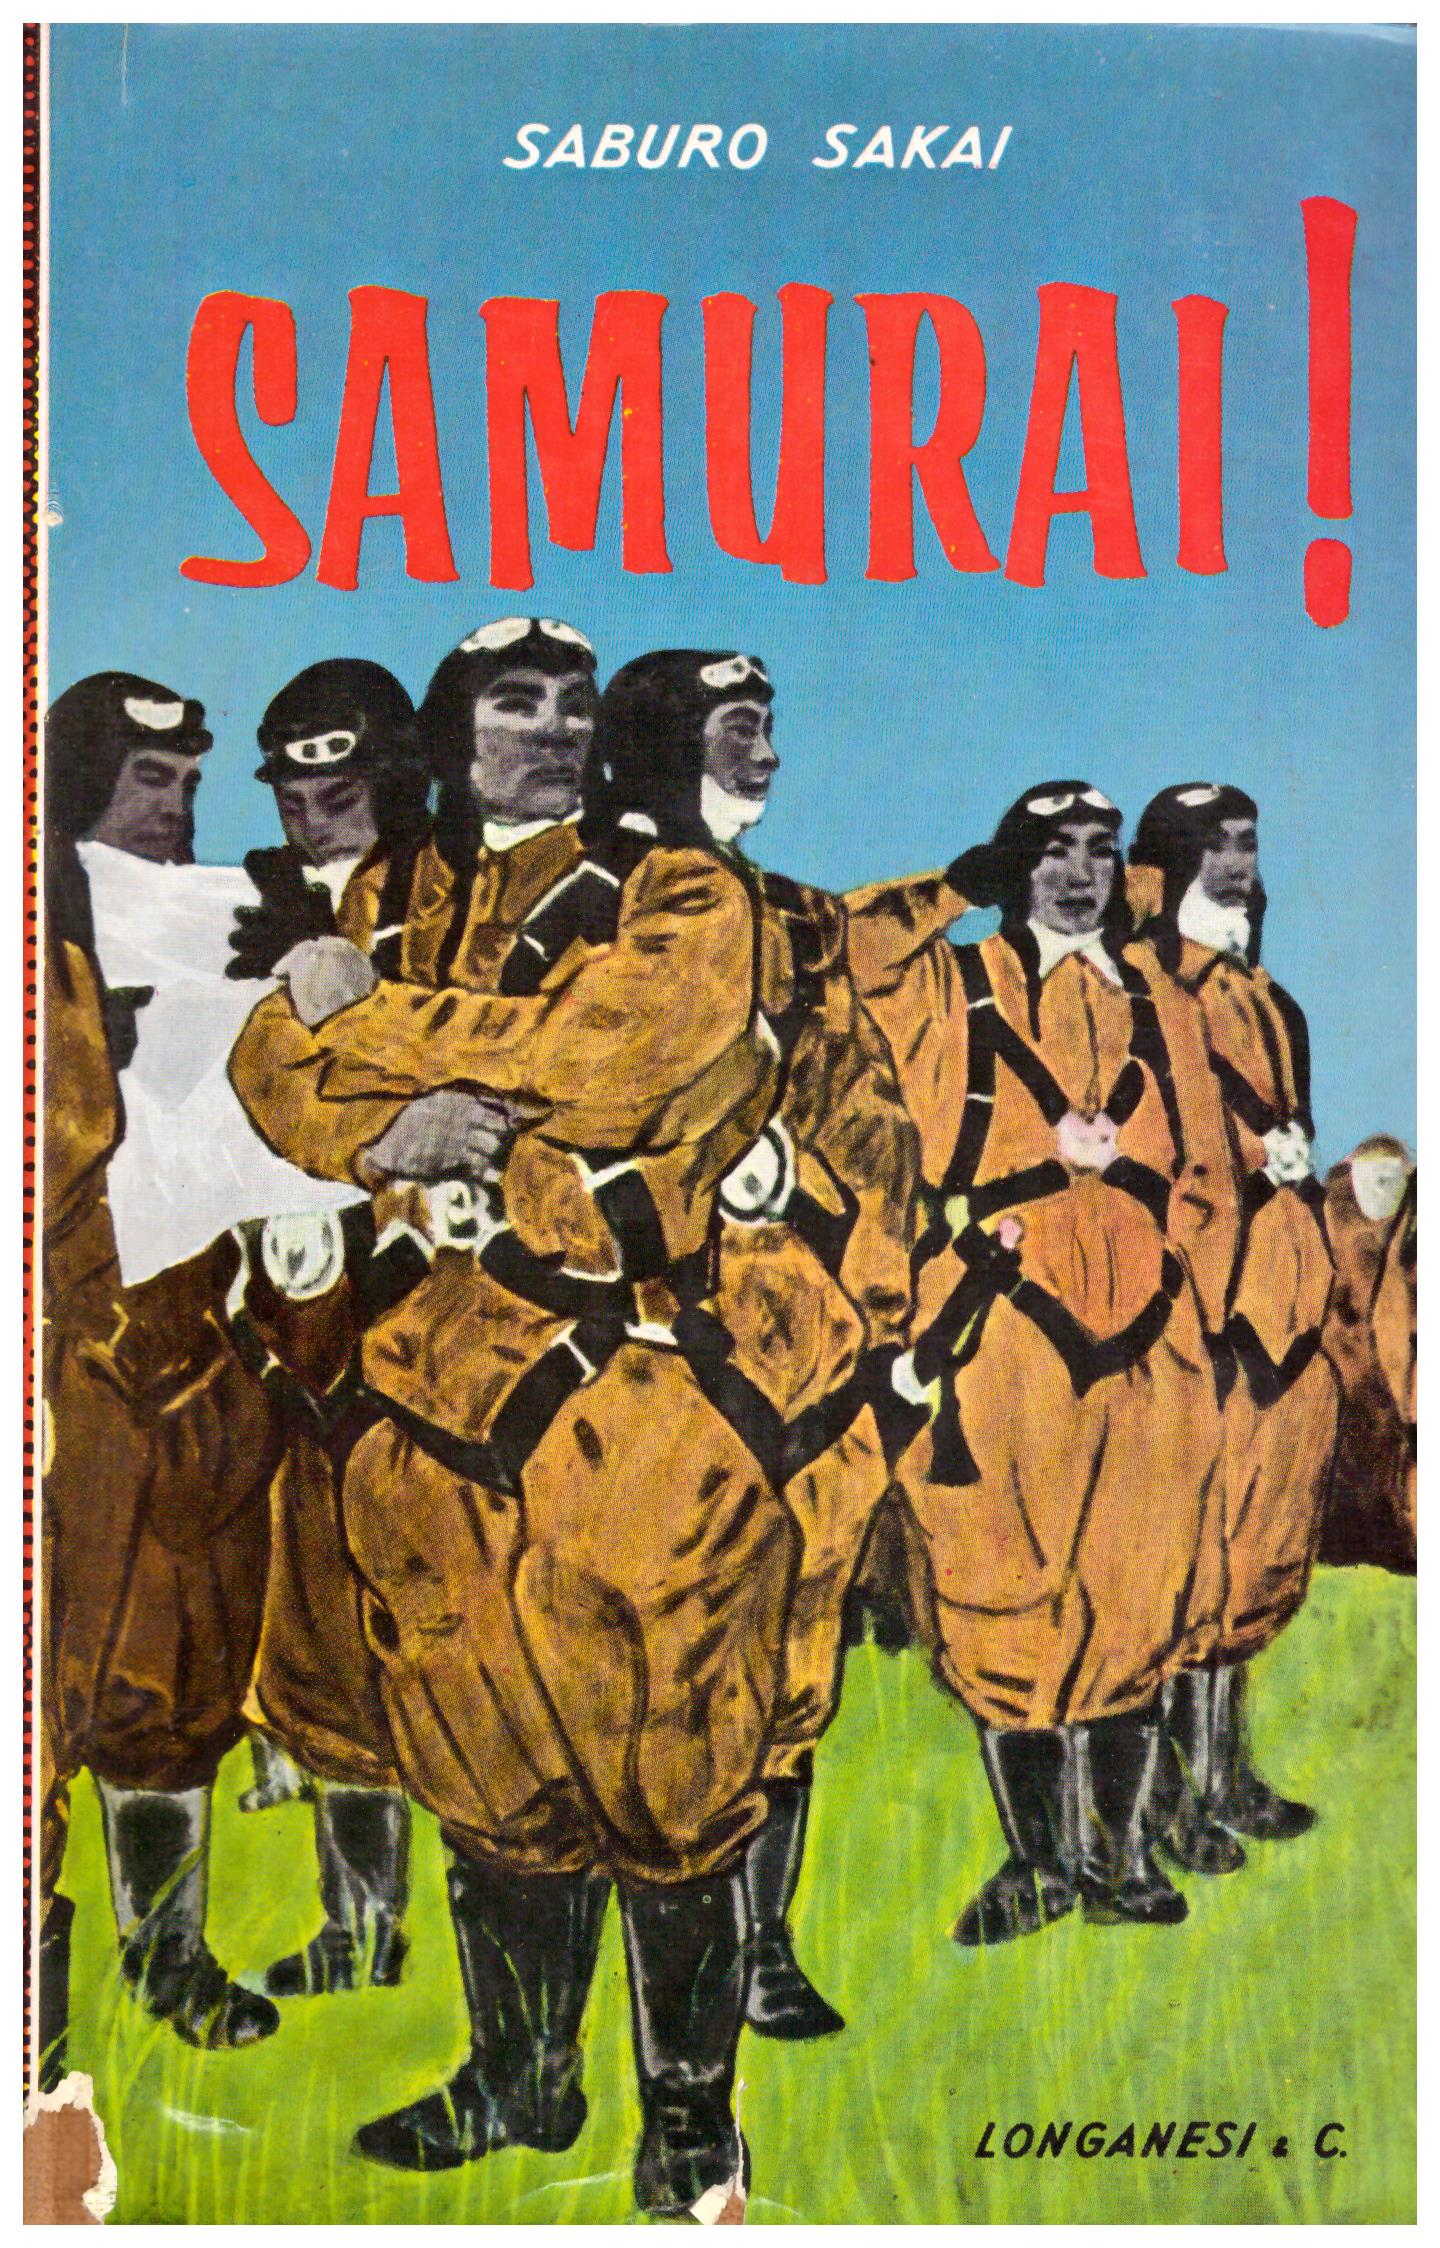 Titolo: Samurai! Autore: Saburo Sakai Editore: Longanesi 1959